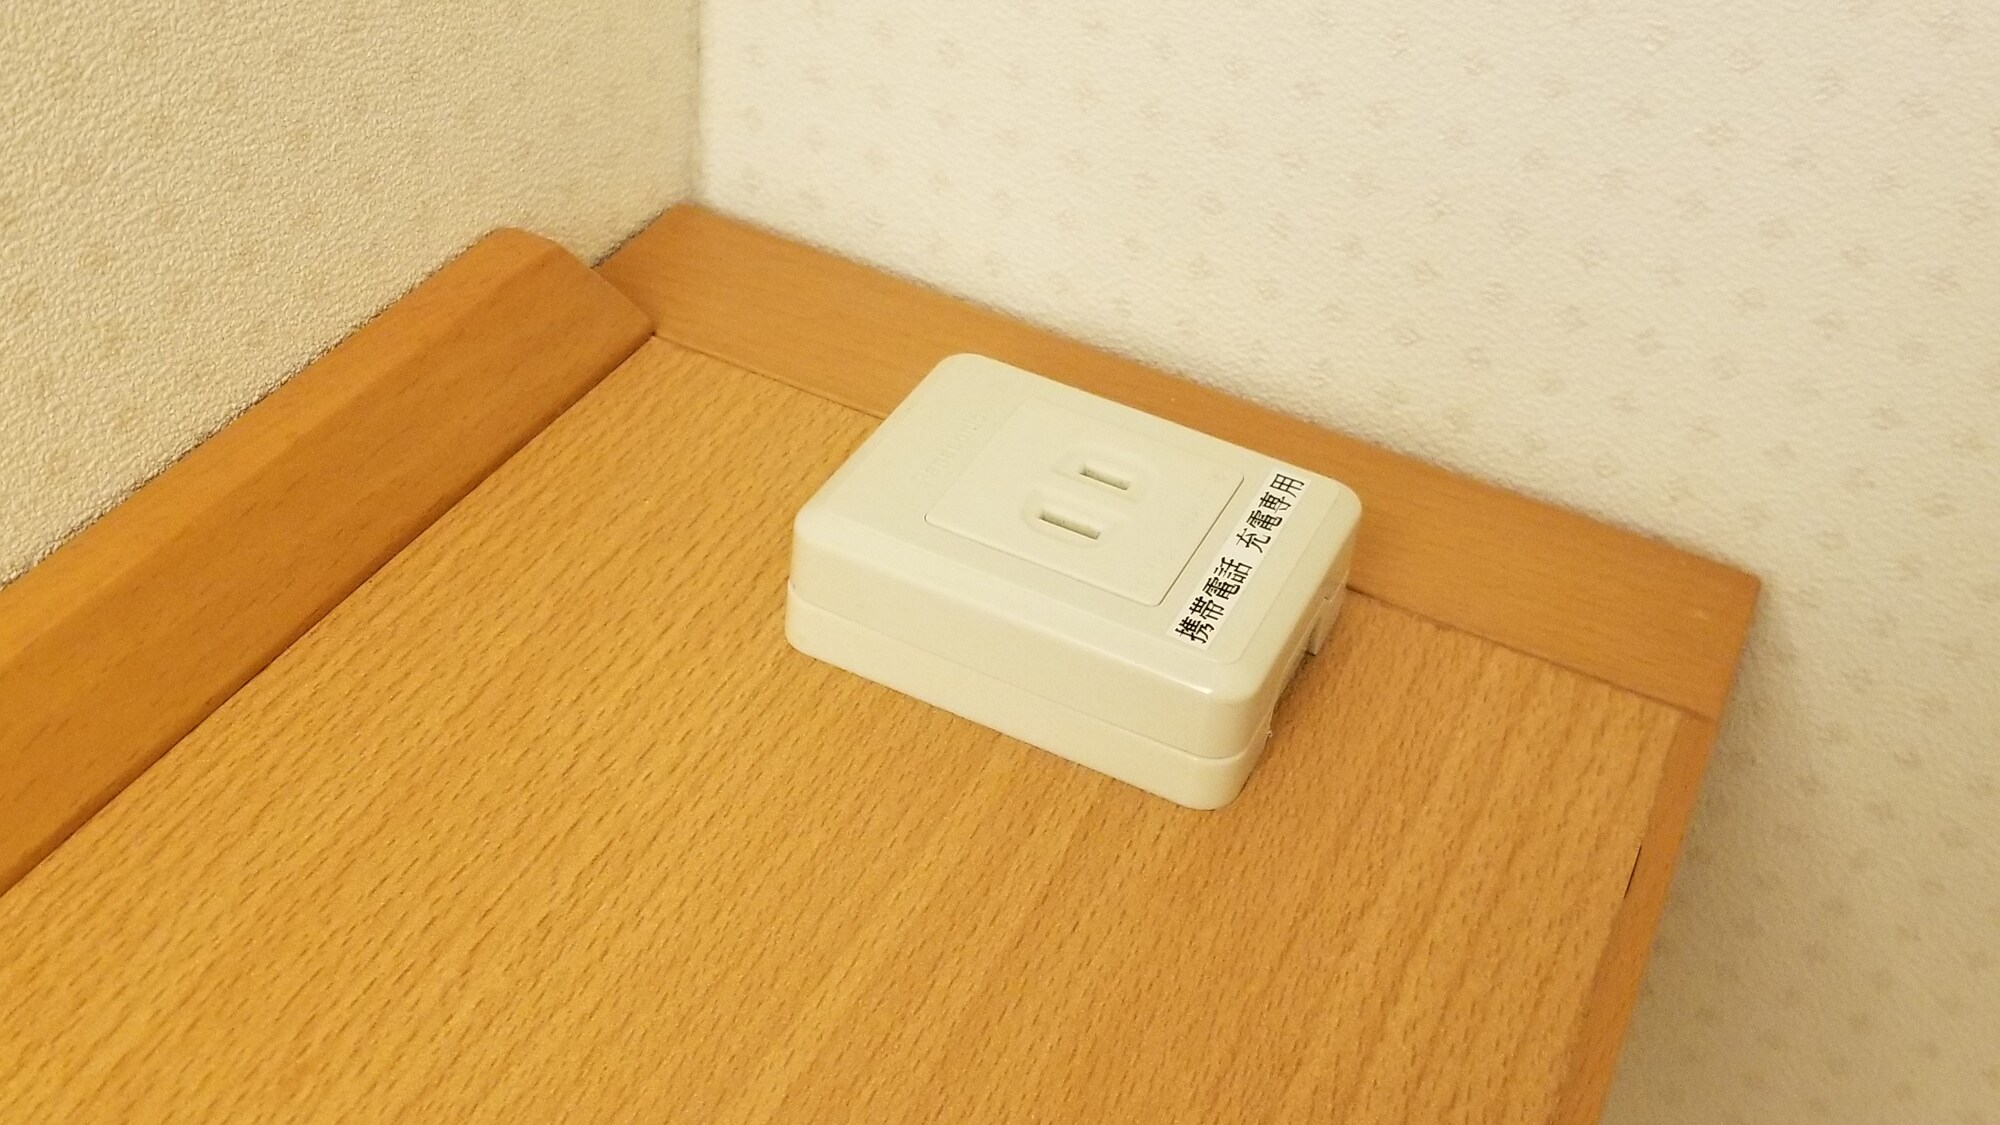 Bedside outlet convenient for smartphones